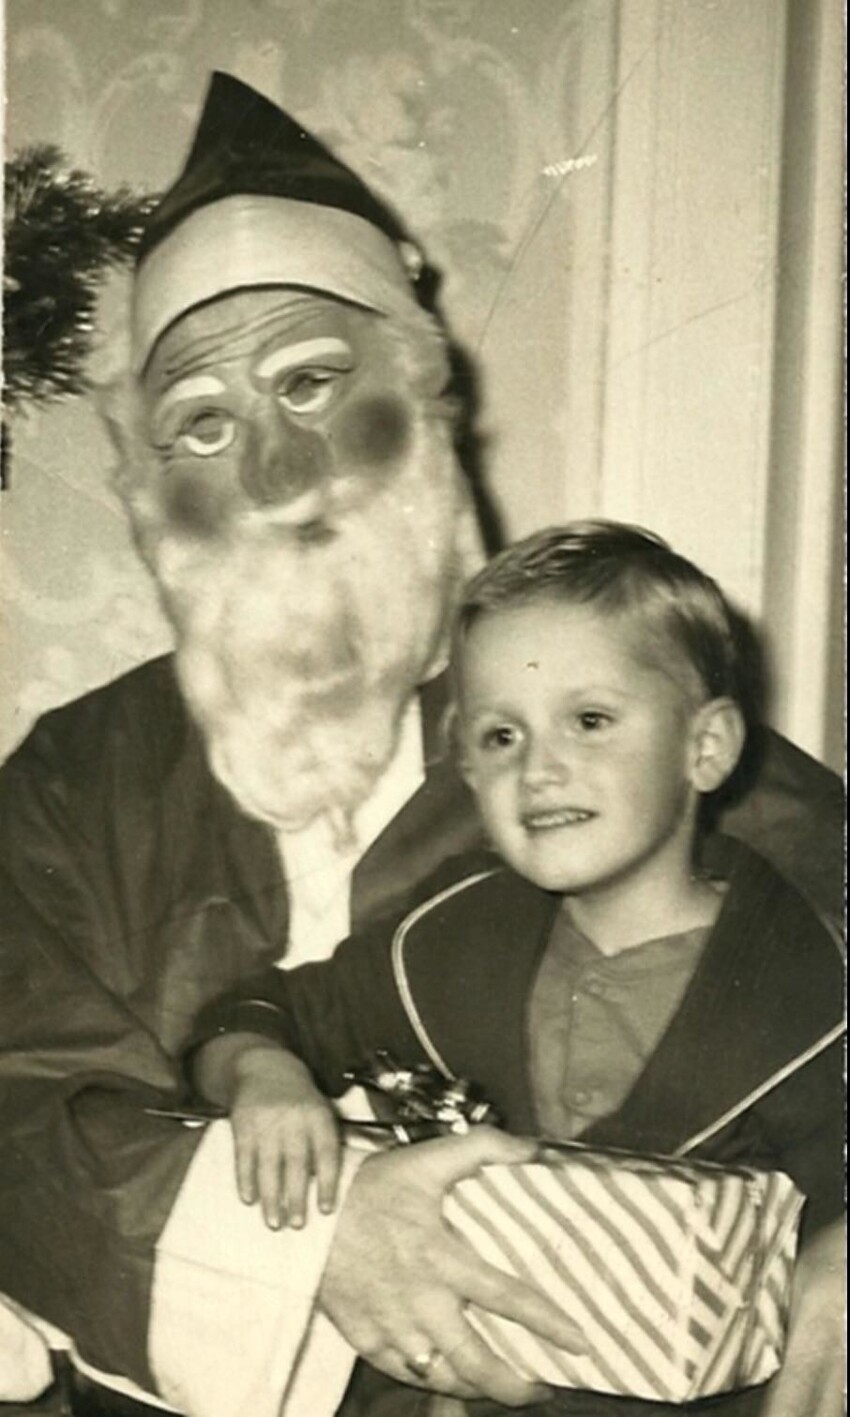 Когда Санта пугает: подборка старых фото с не самым веселым Дедом Морозом